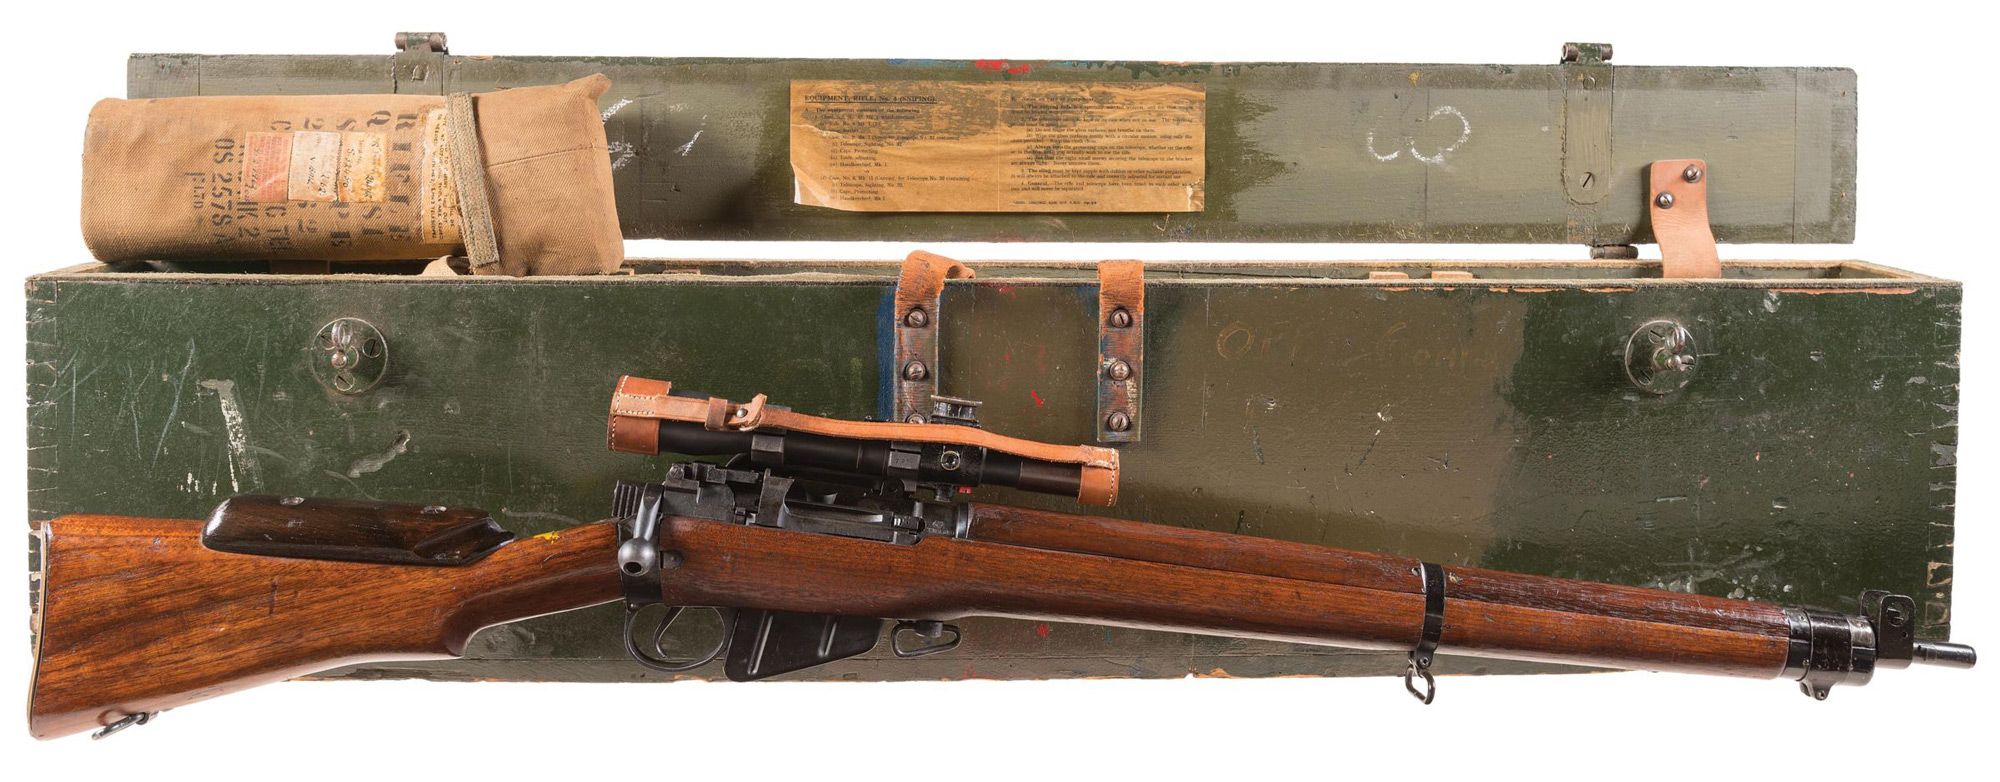 Enfield No. 4 Mk I (T) sniper rifle